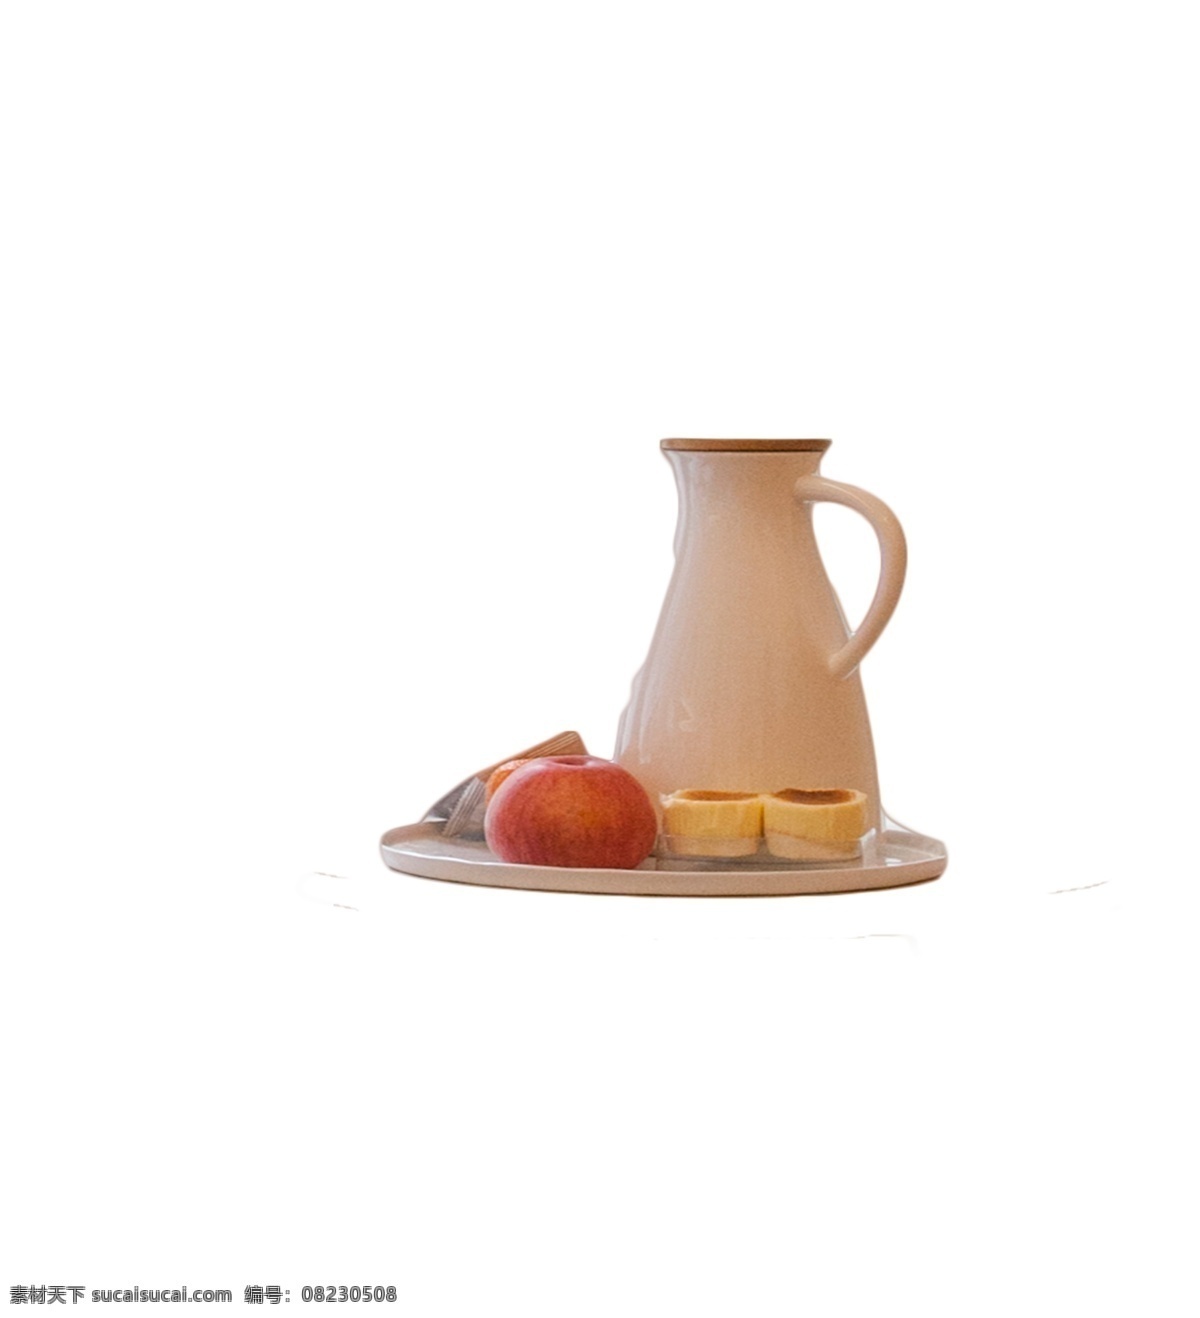 果盘茶壶水果 水果 茶壶 茶杯 饮具